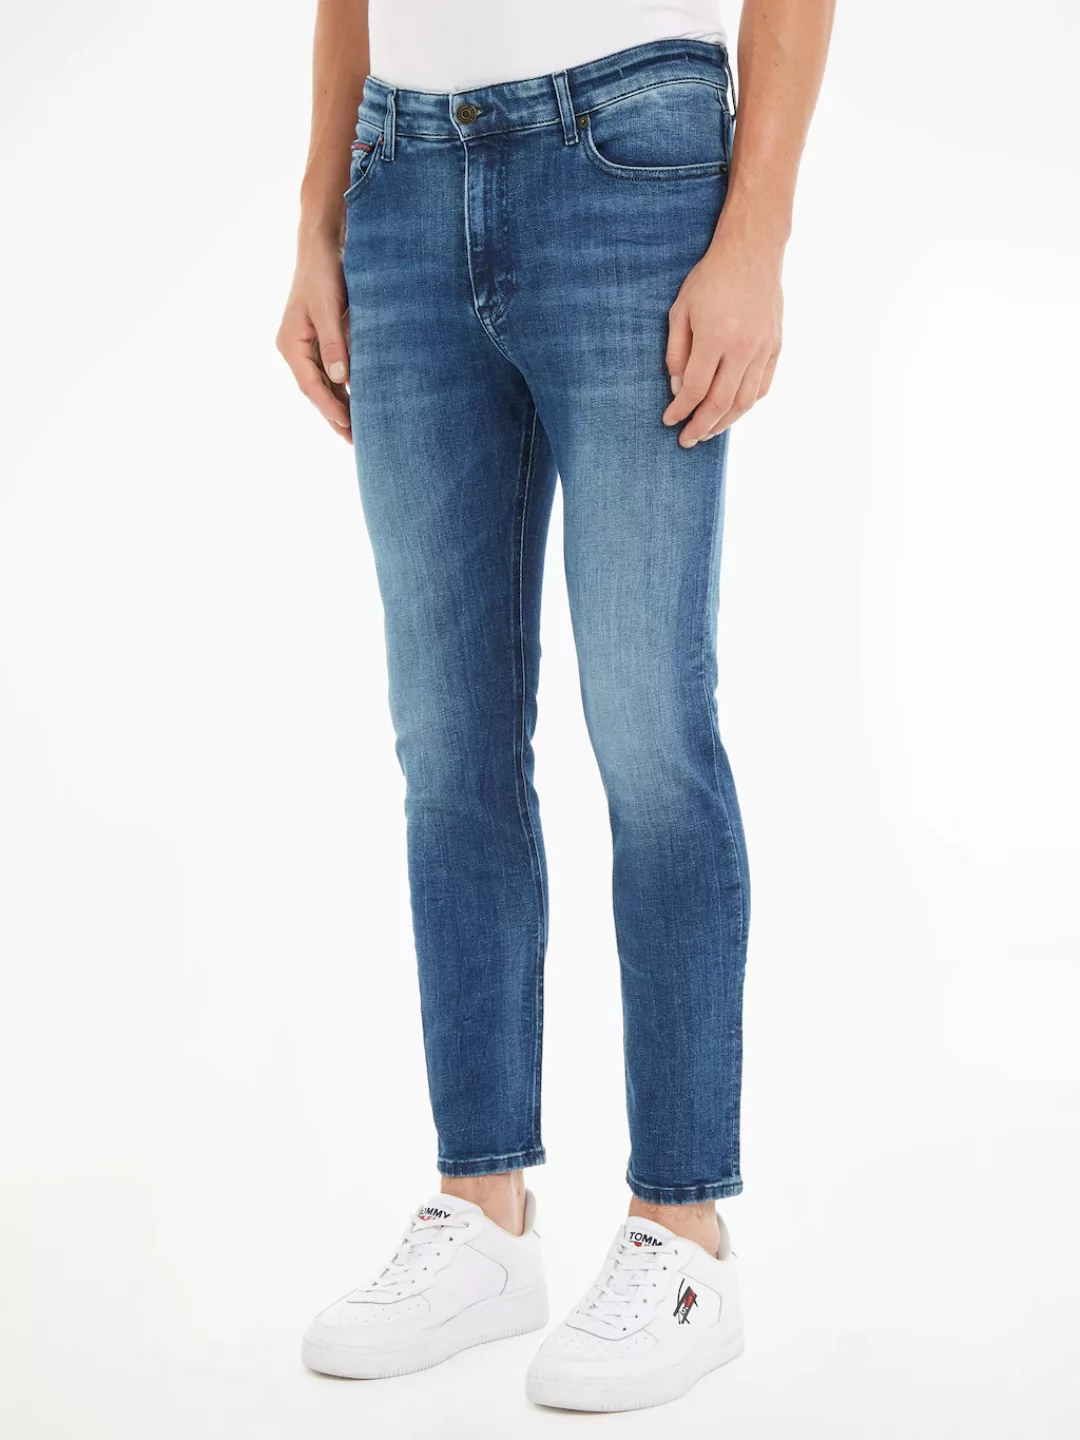 Tommy Jeans Skinny-fit-Jeans SIMON SKNY BG3384 in modischen Waschungen günstig online kaufen